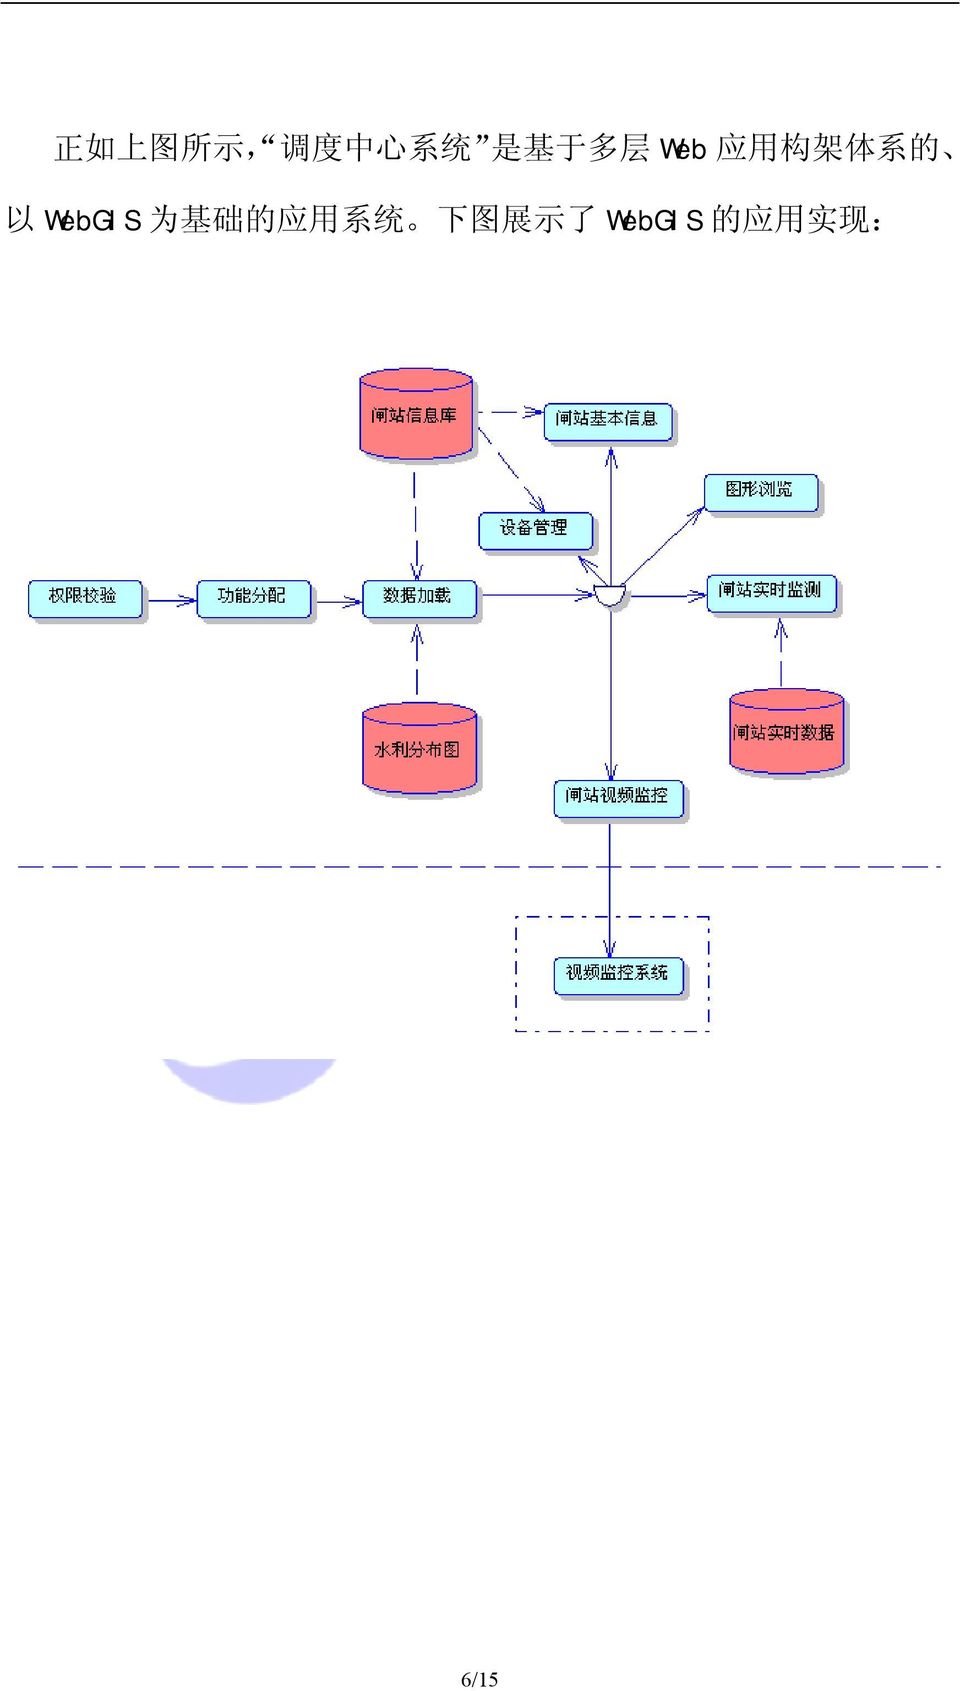 WebGIS 为 基 础 的 应 用 系 统 下 图